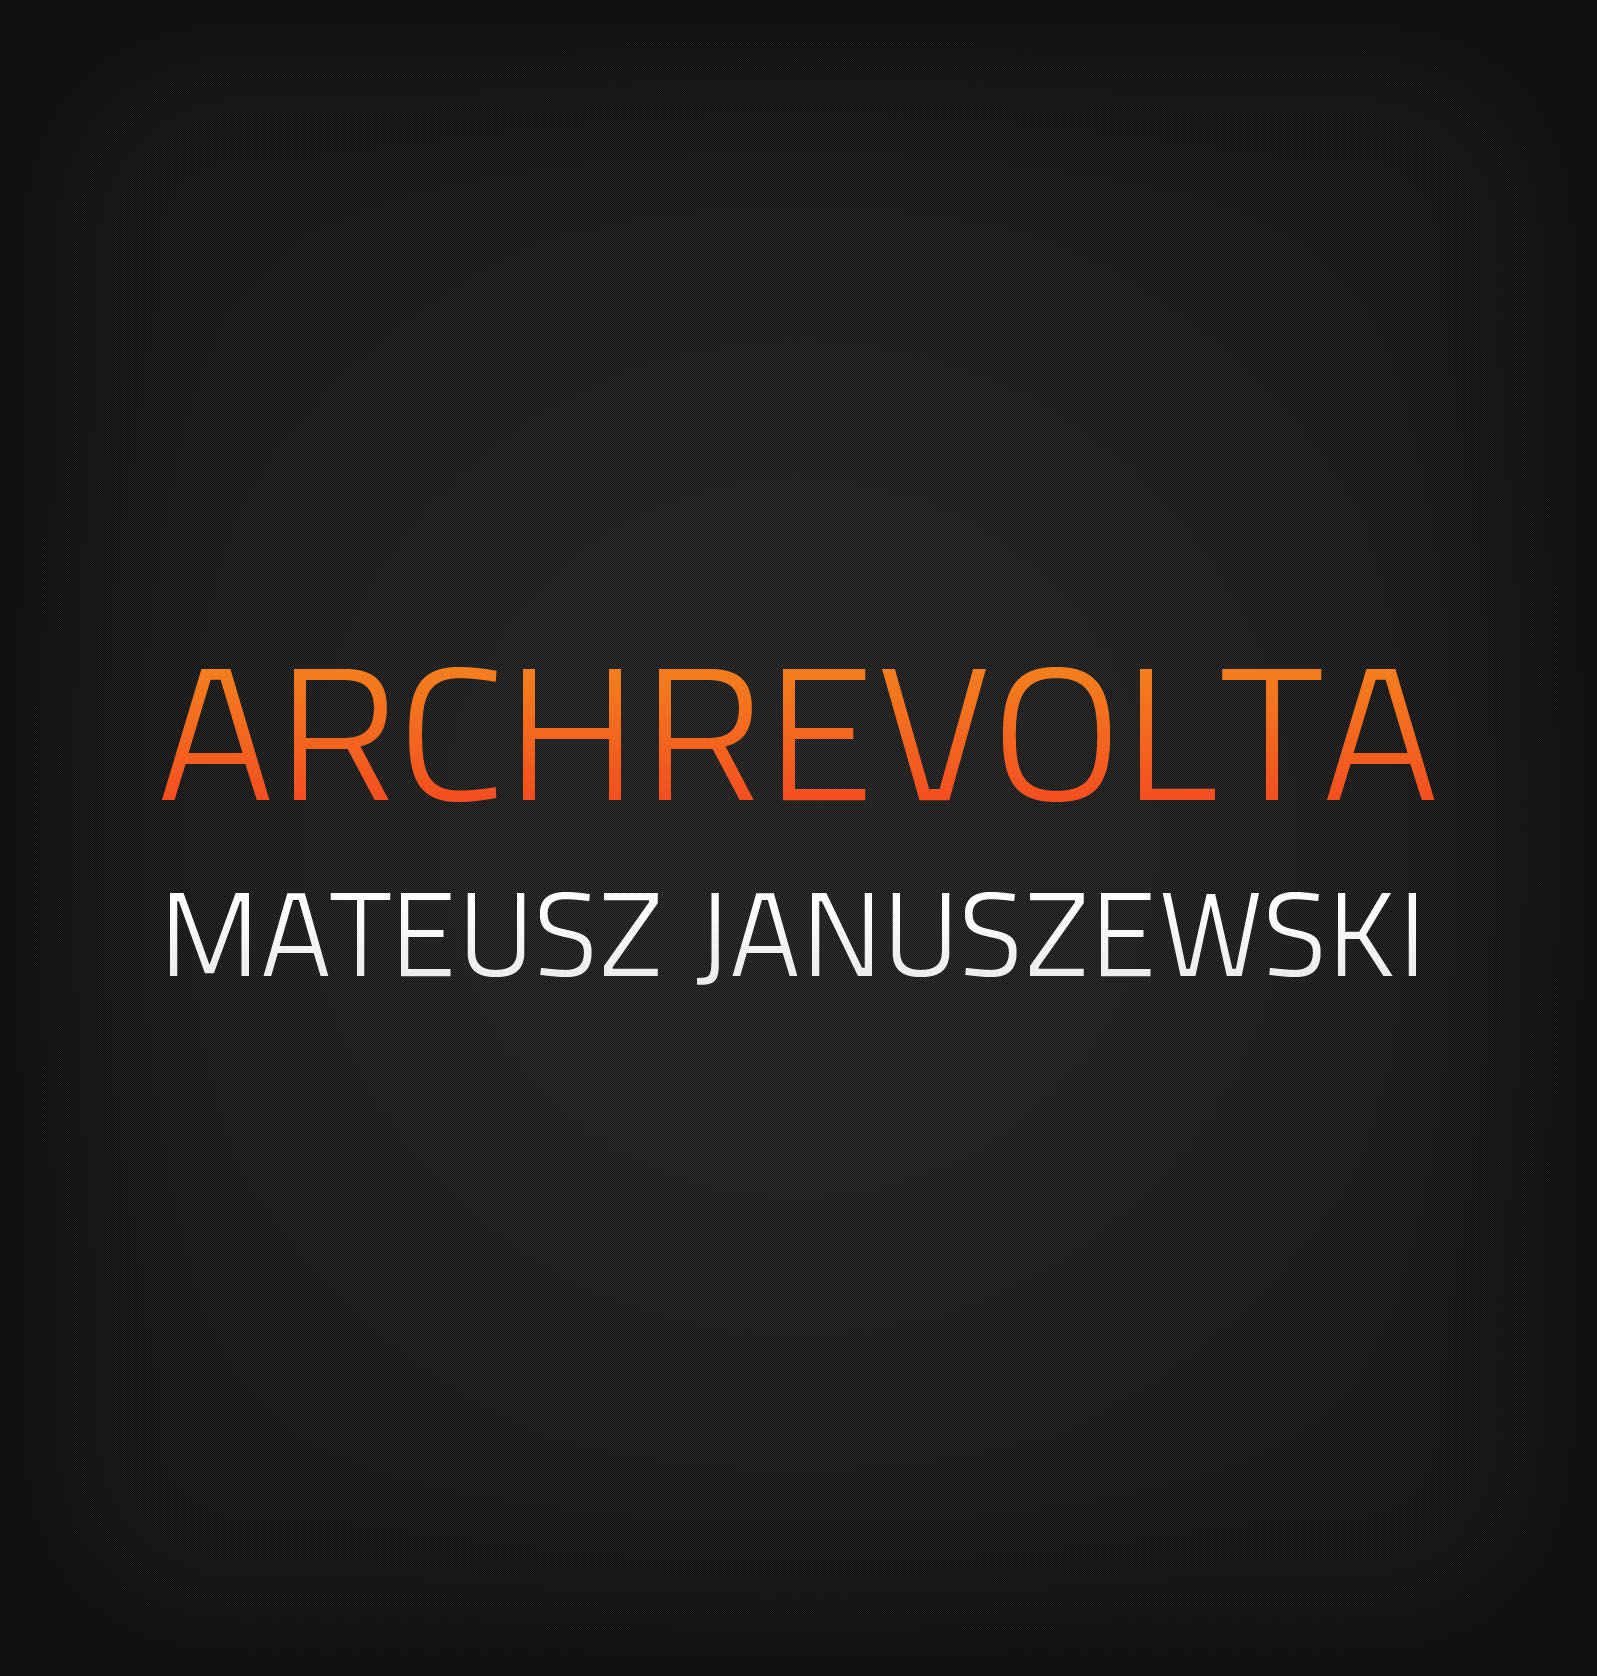 Archrevolta Studio architektury Januszewski M